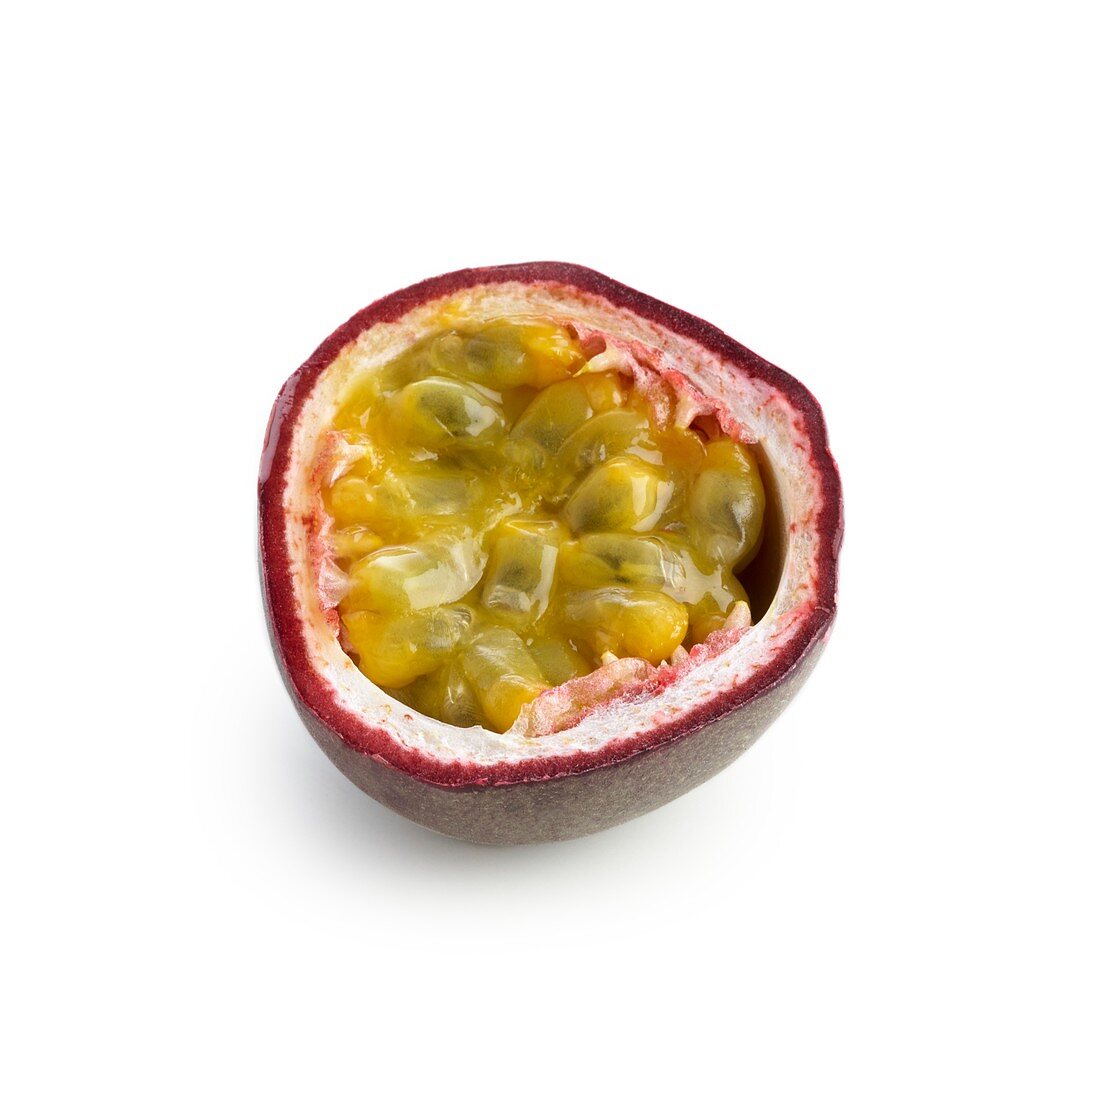 Half a passionfruit